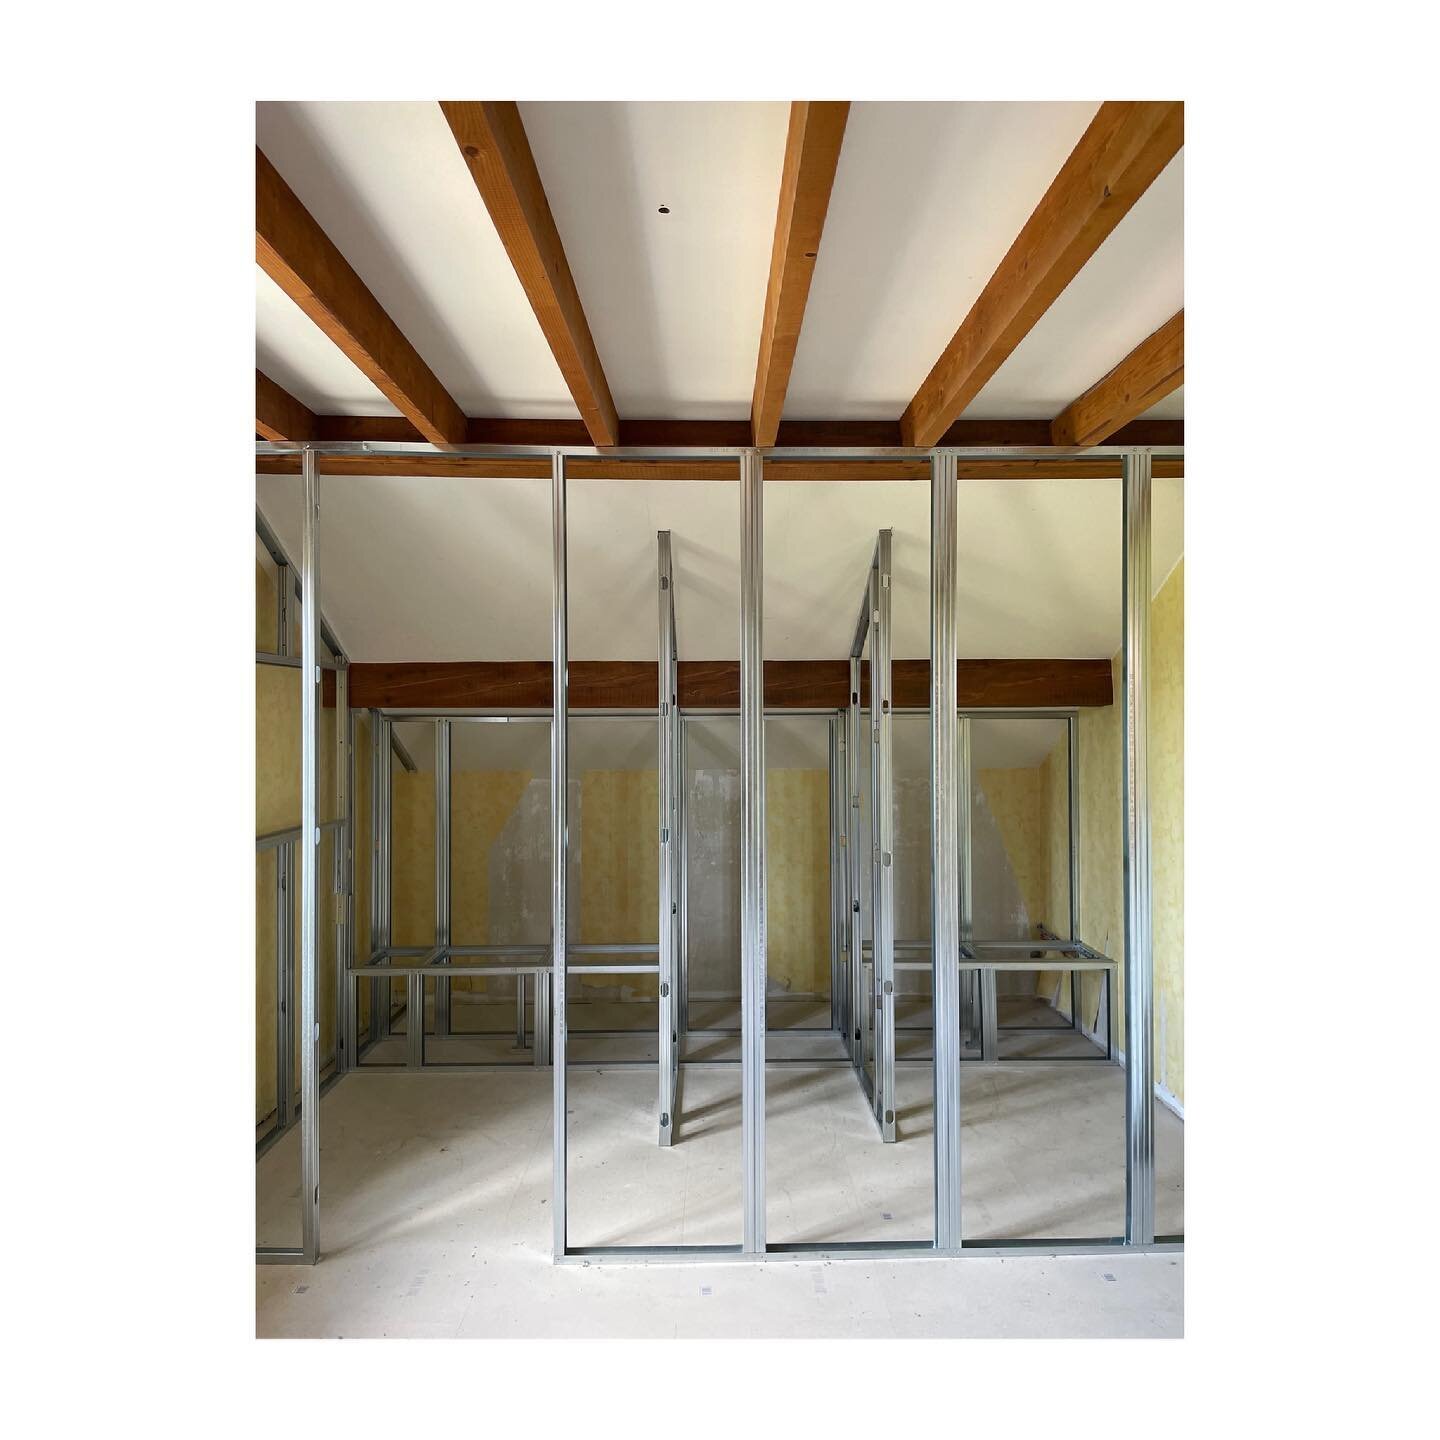 Projet T+M | volume en cours
👉 ossature placo pr salle d&rsquo;eau
.
.
.
.
.
#chantier #workinprogress #interiordesign #architectureinterieure